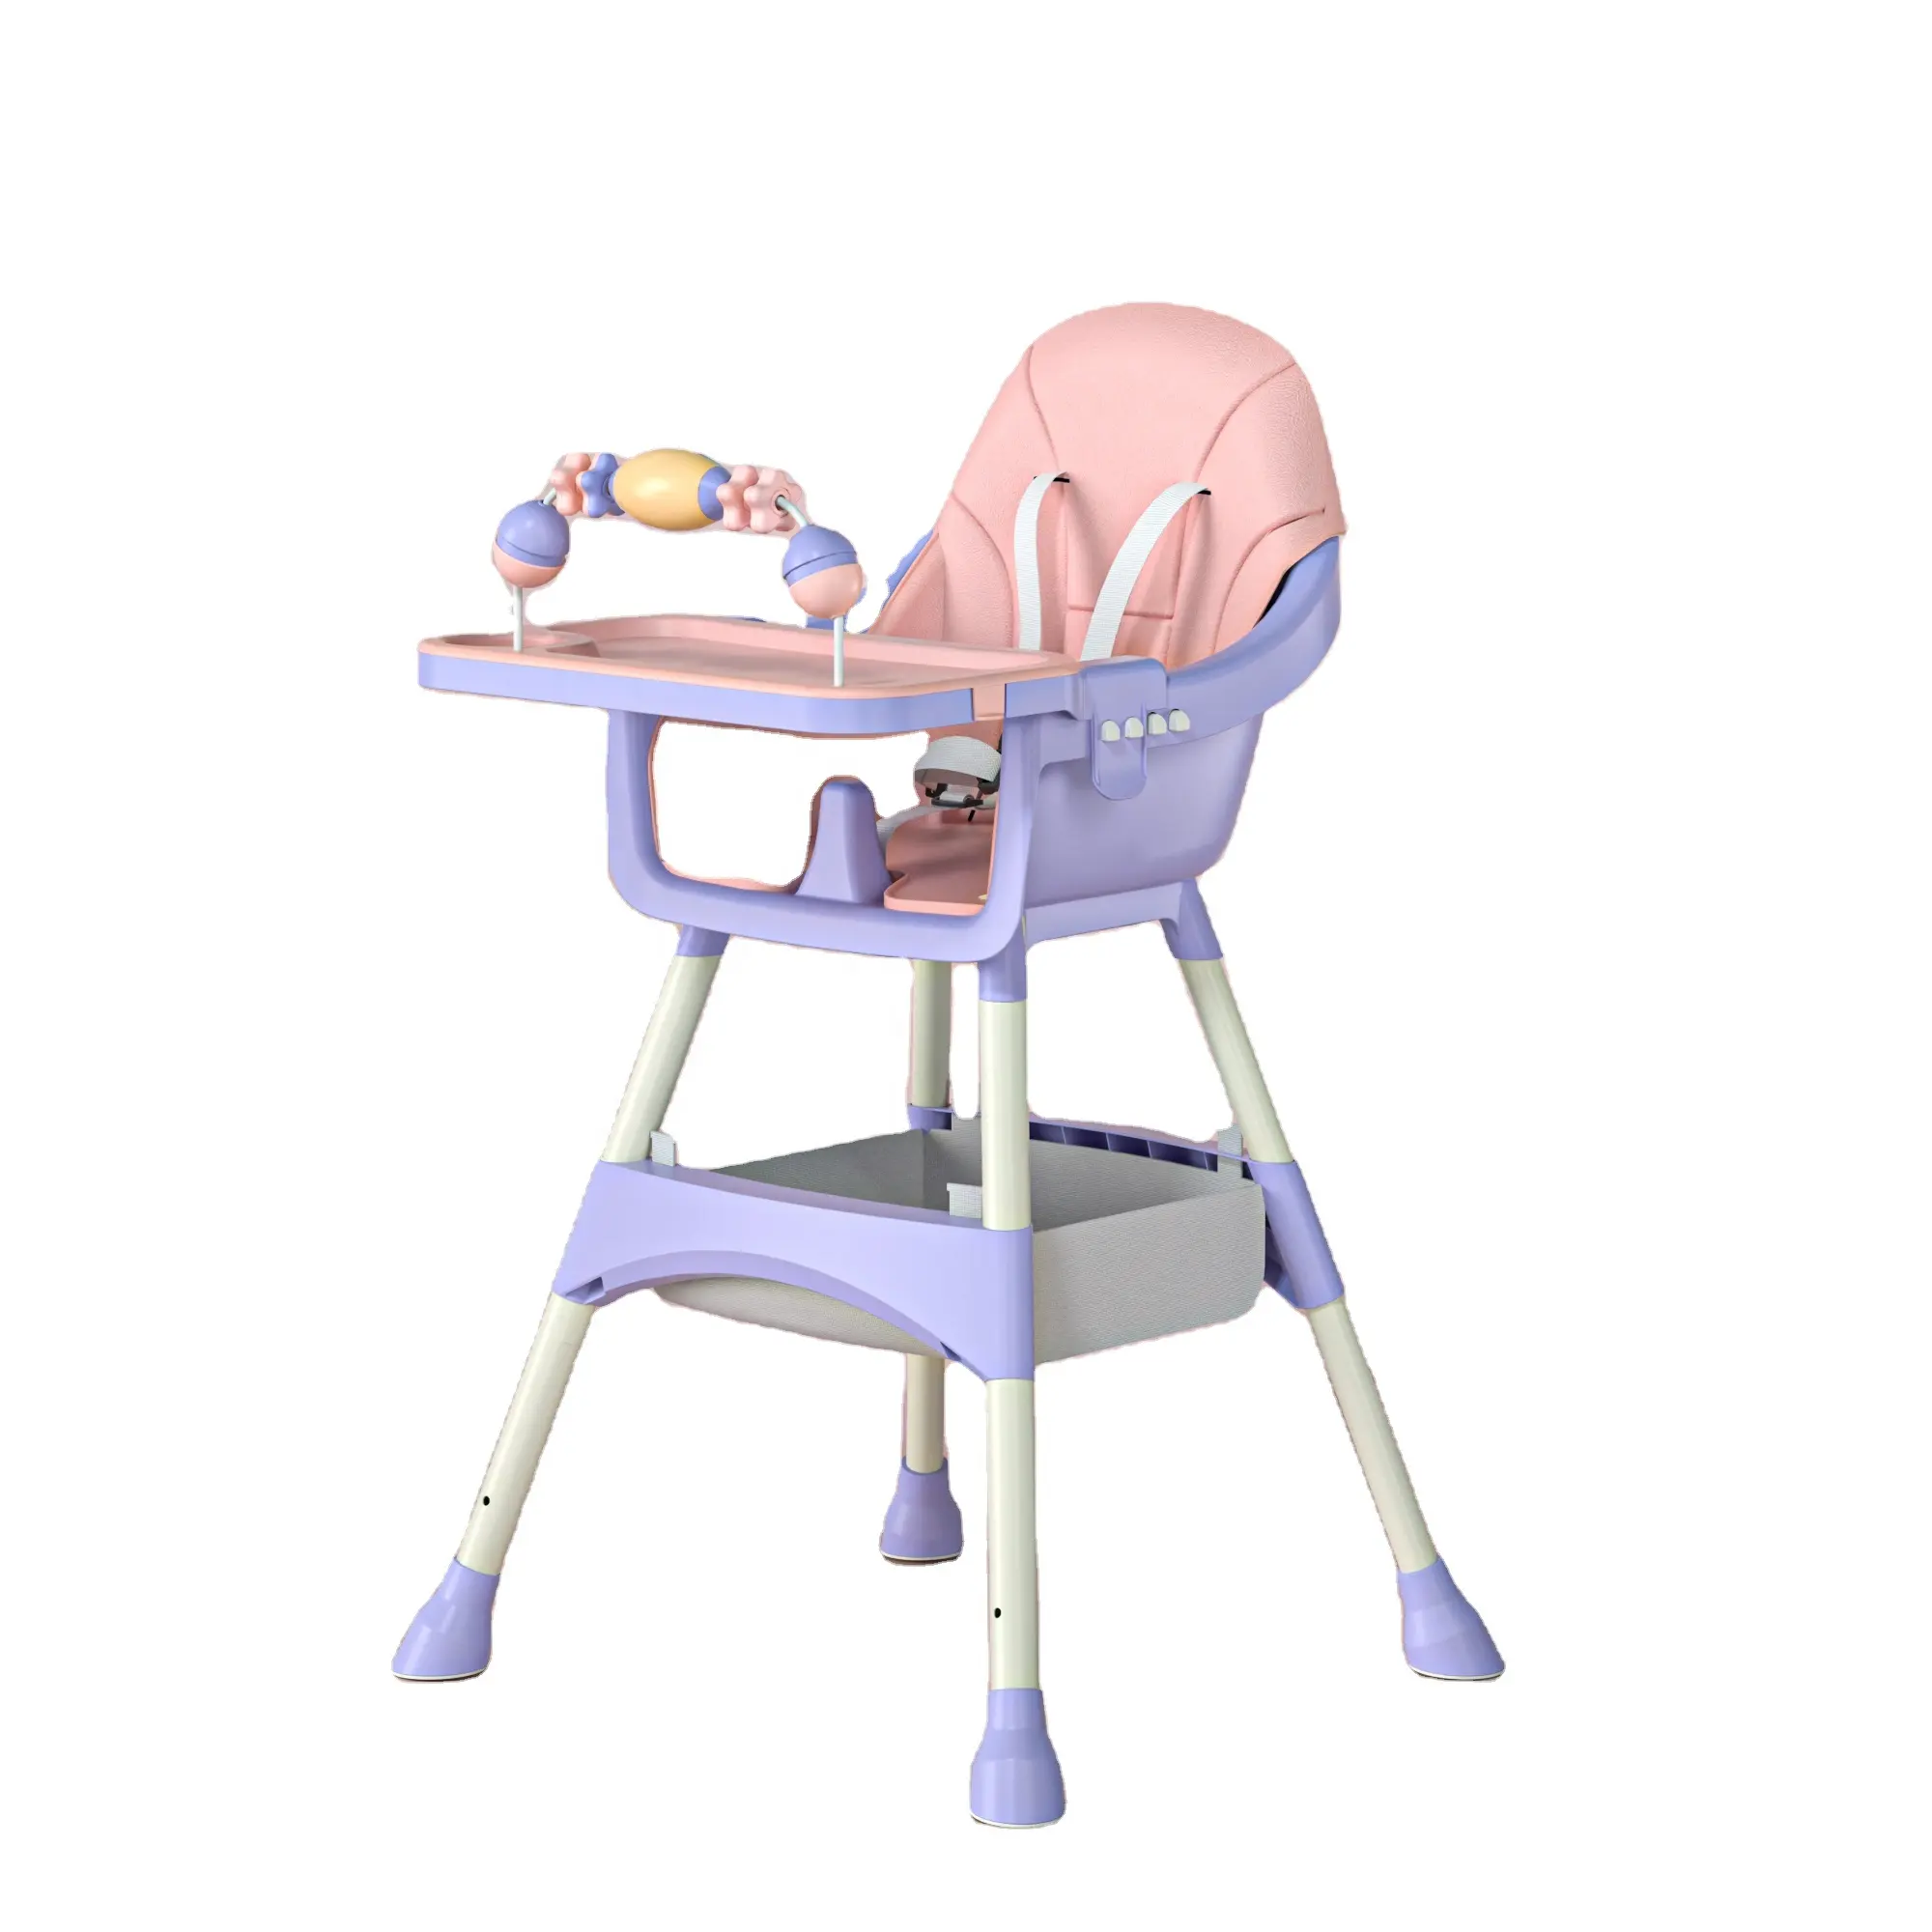 장치 부대와 높은을 가진 먹이는 의자 아기는 연구 책상을 가진 1 개의 아기 높은 의자에 대하여 lear/3 를 먹는 디자인 다 fuction를 강화합니다